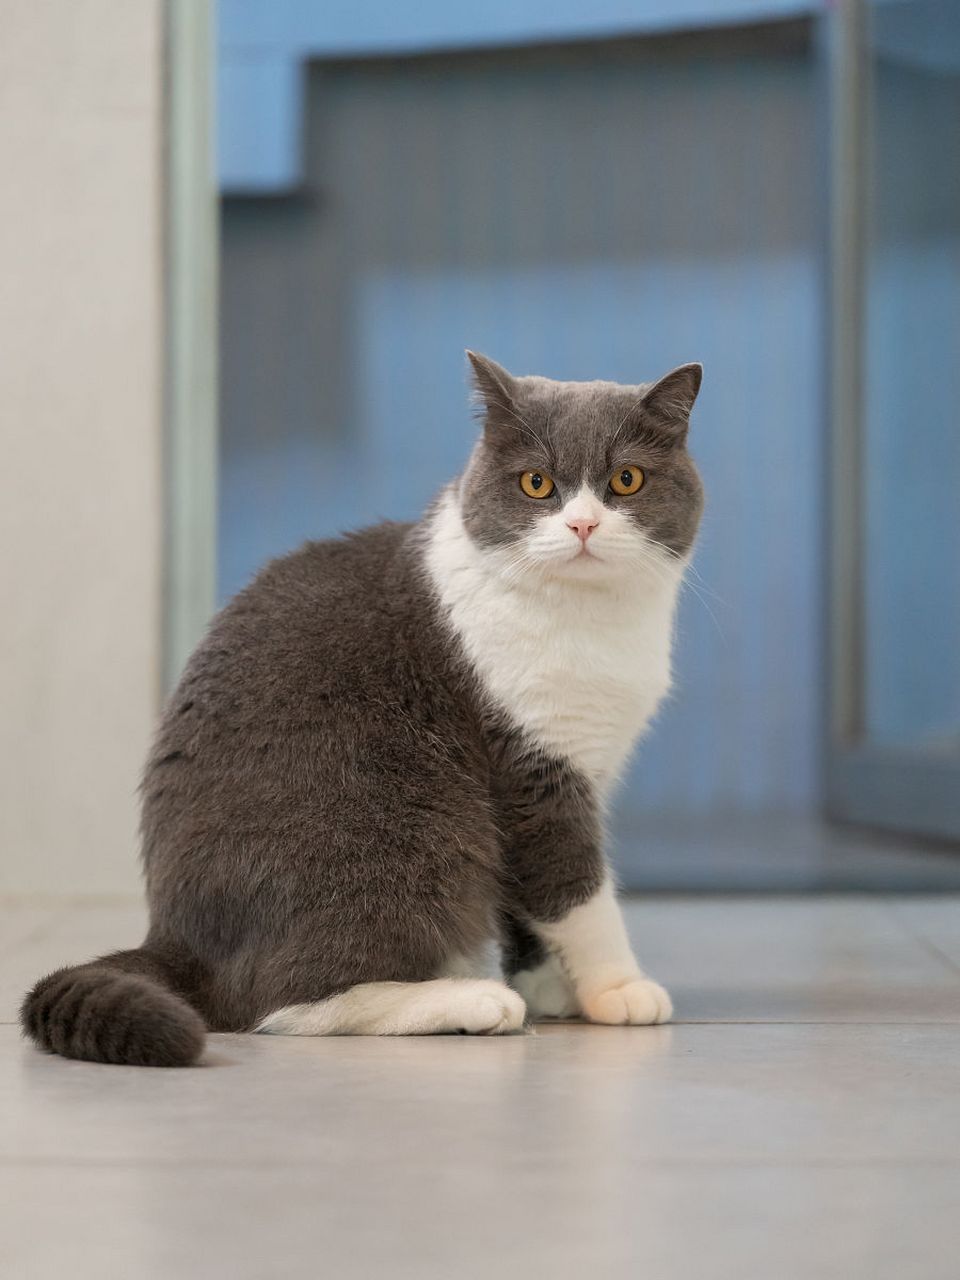 曼基康猫,又被称为短腿猫,以其独特的外貌和友好的性格受到许多猫